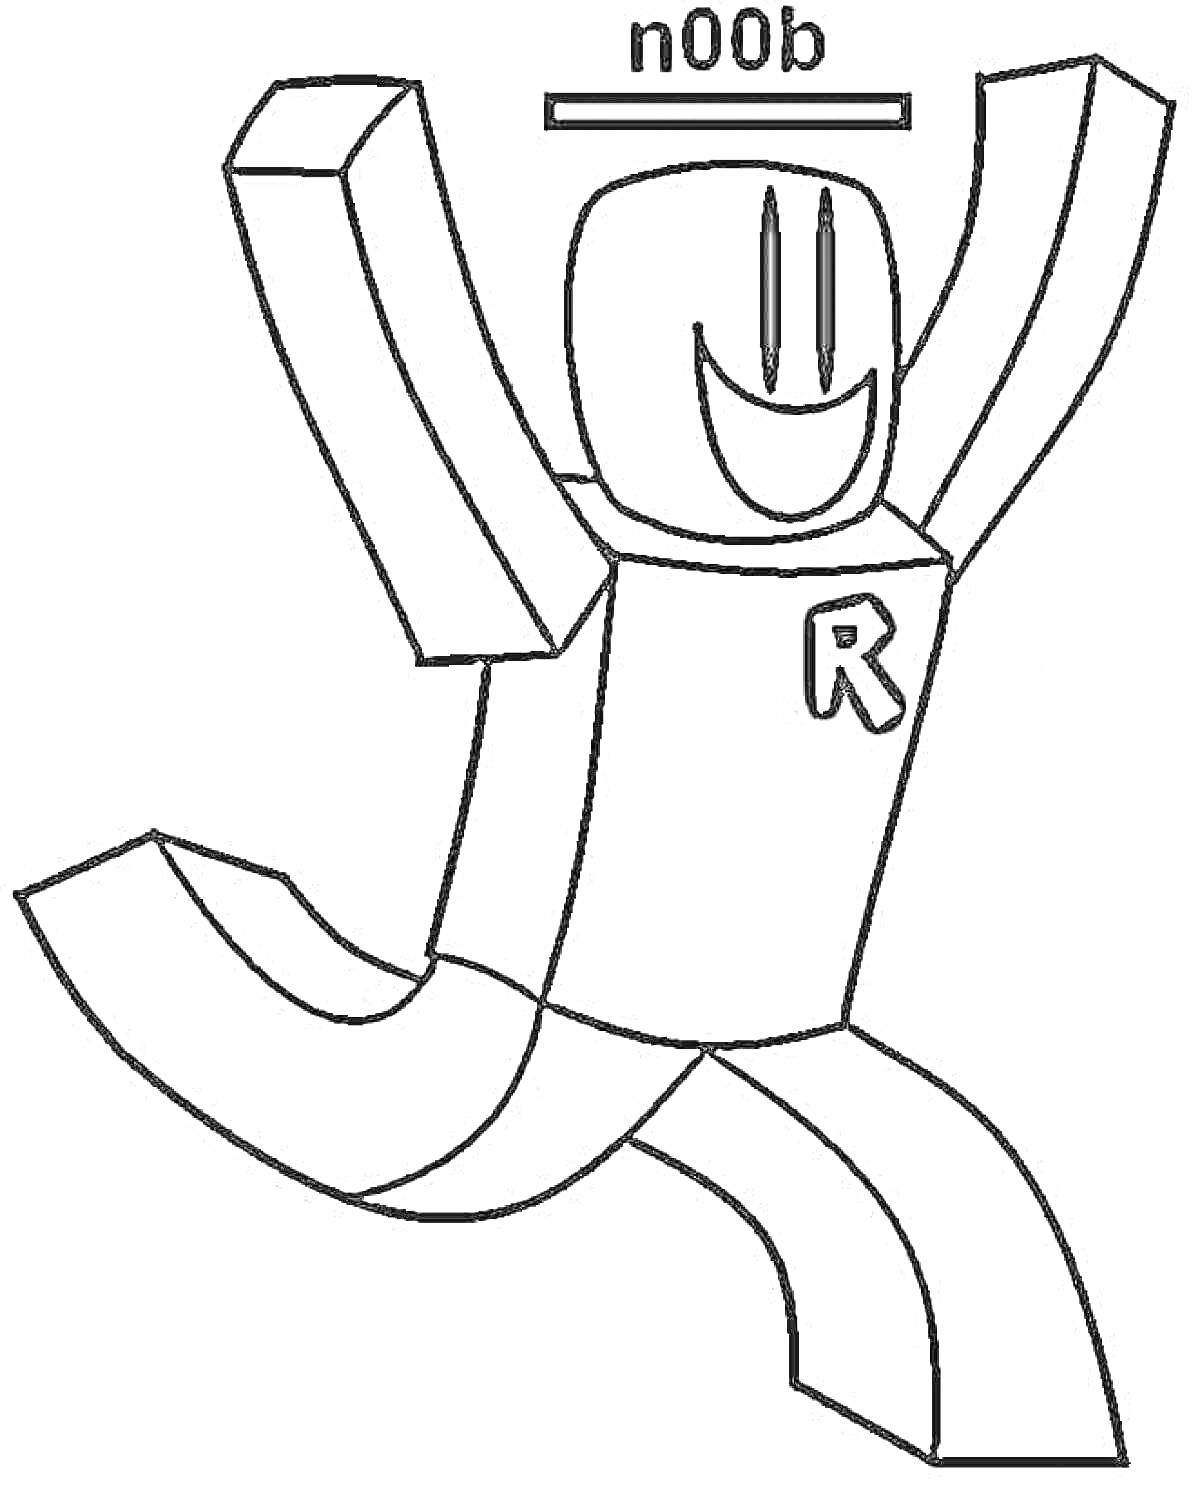 Roblox персонаж нуб с надписью 